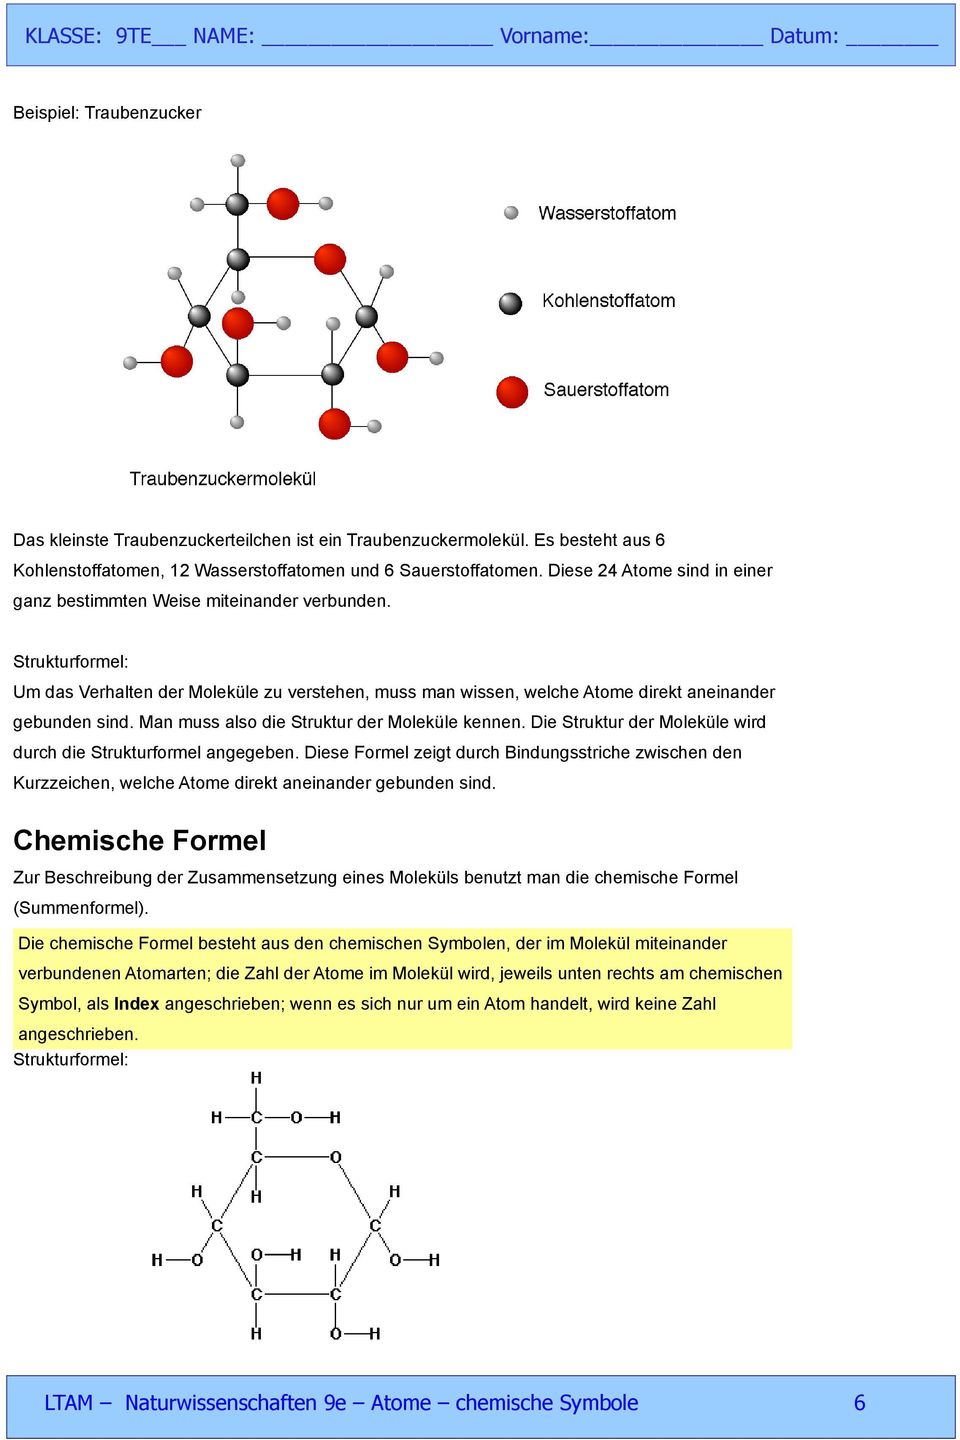 Man muss also die Struktur der Moleküle kennen. Die Struktur der Moleküle wird durch die Strukturformel angegeben.